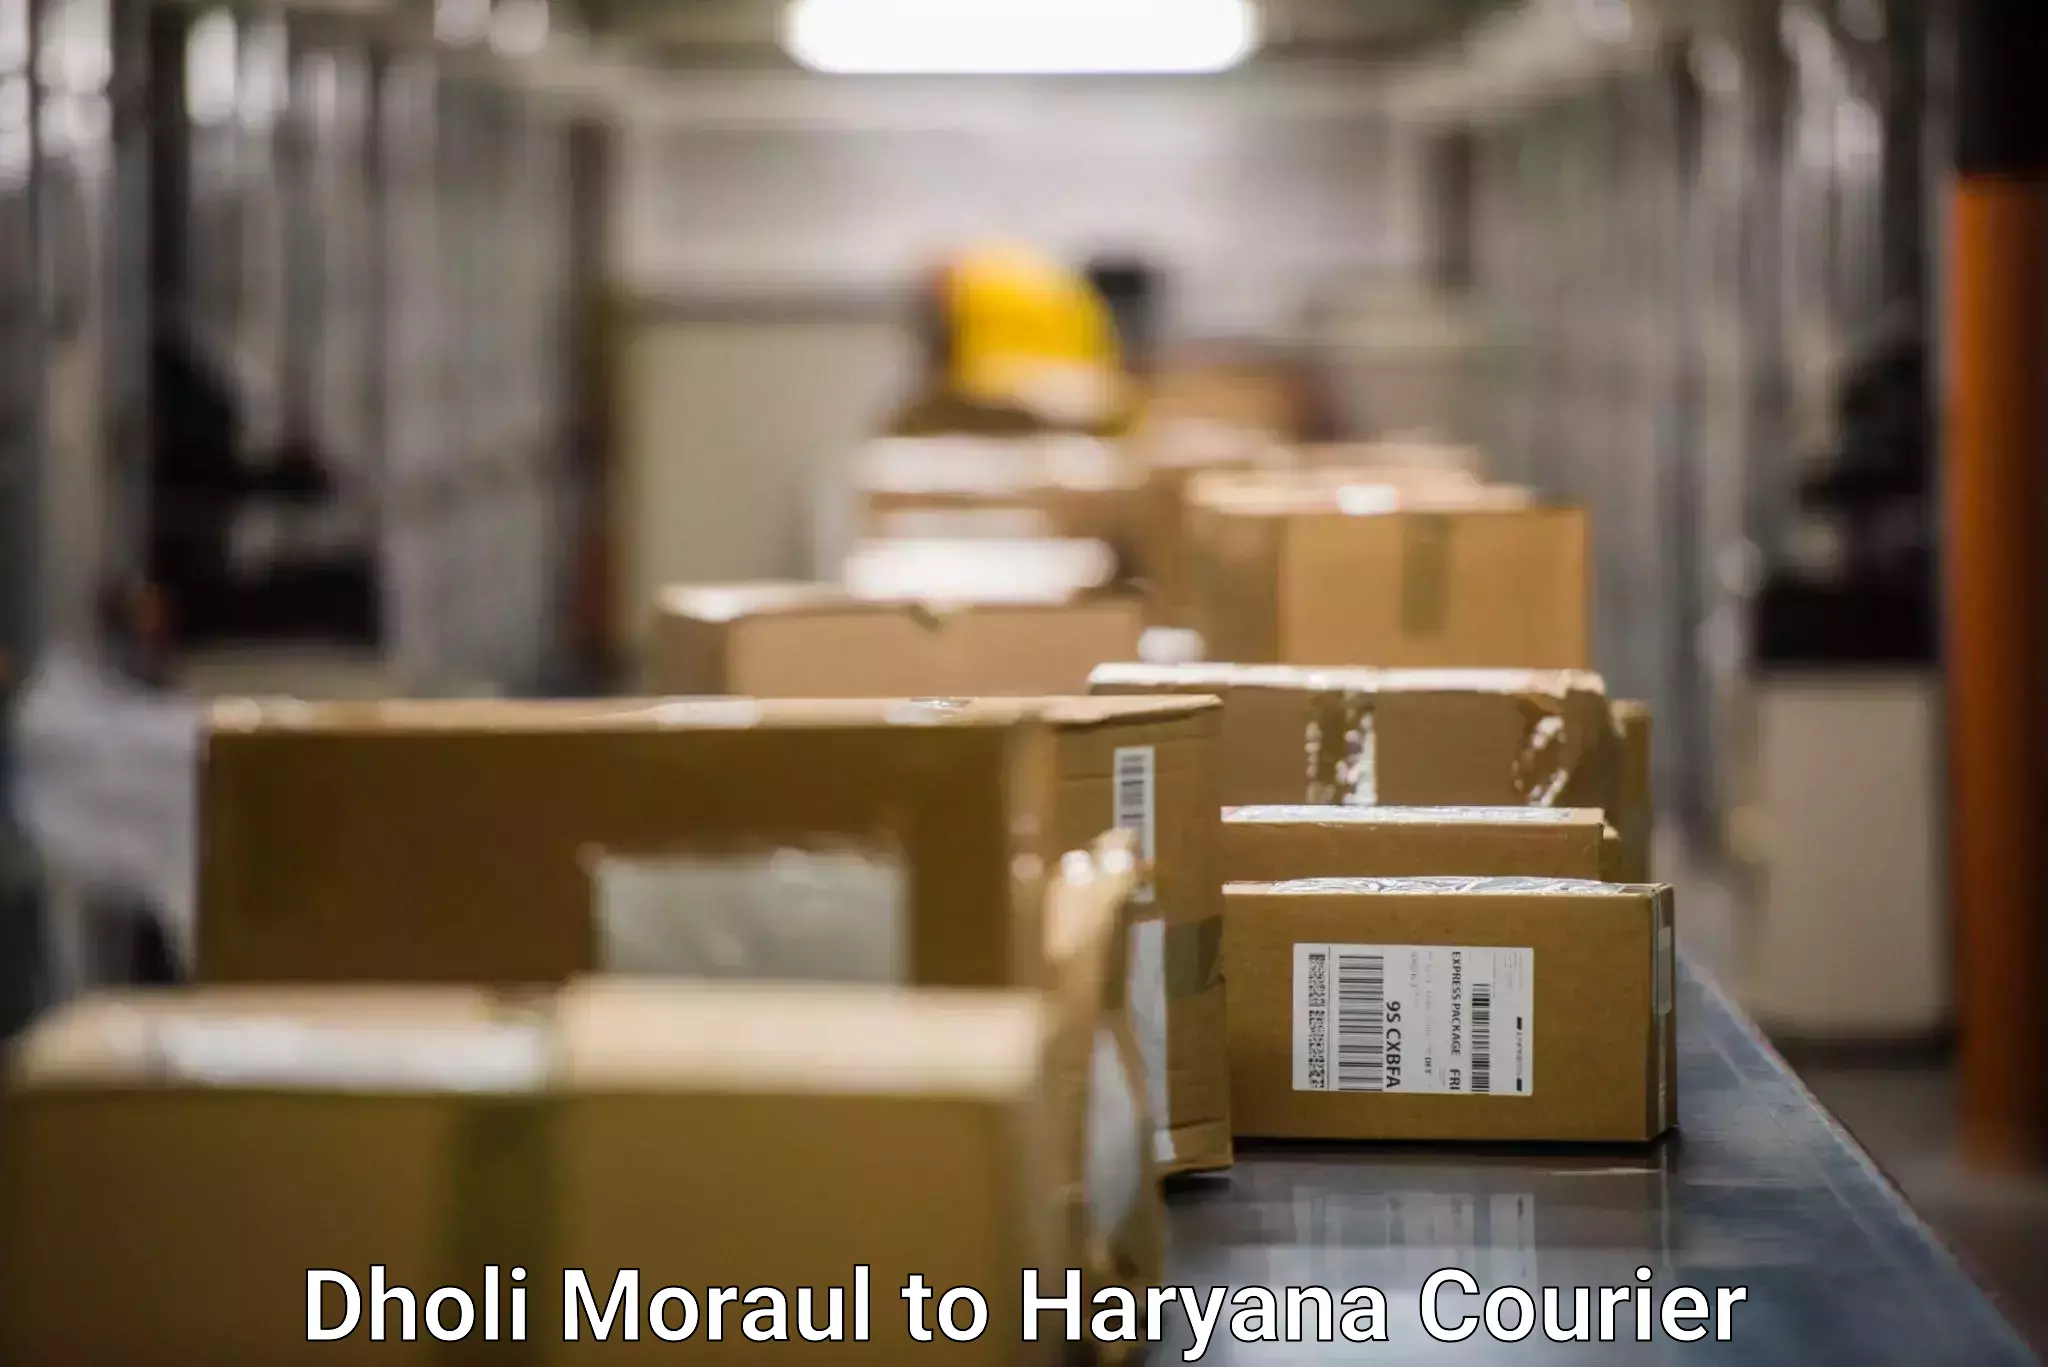 Comprehensive shipping network Dholi Moraul to Haryana